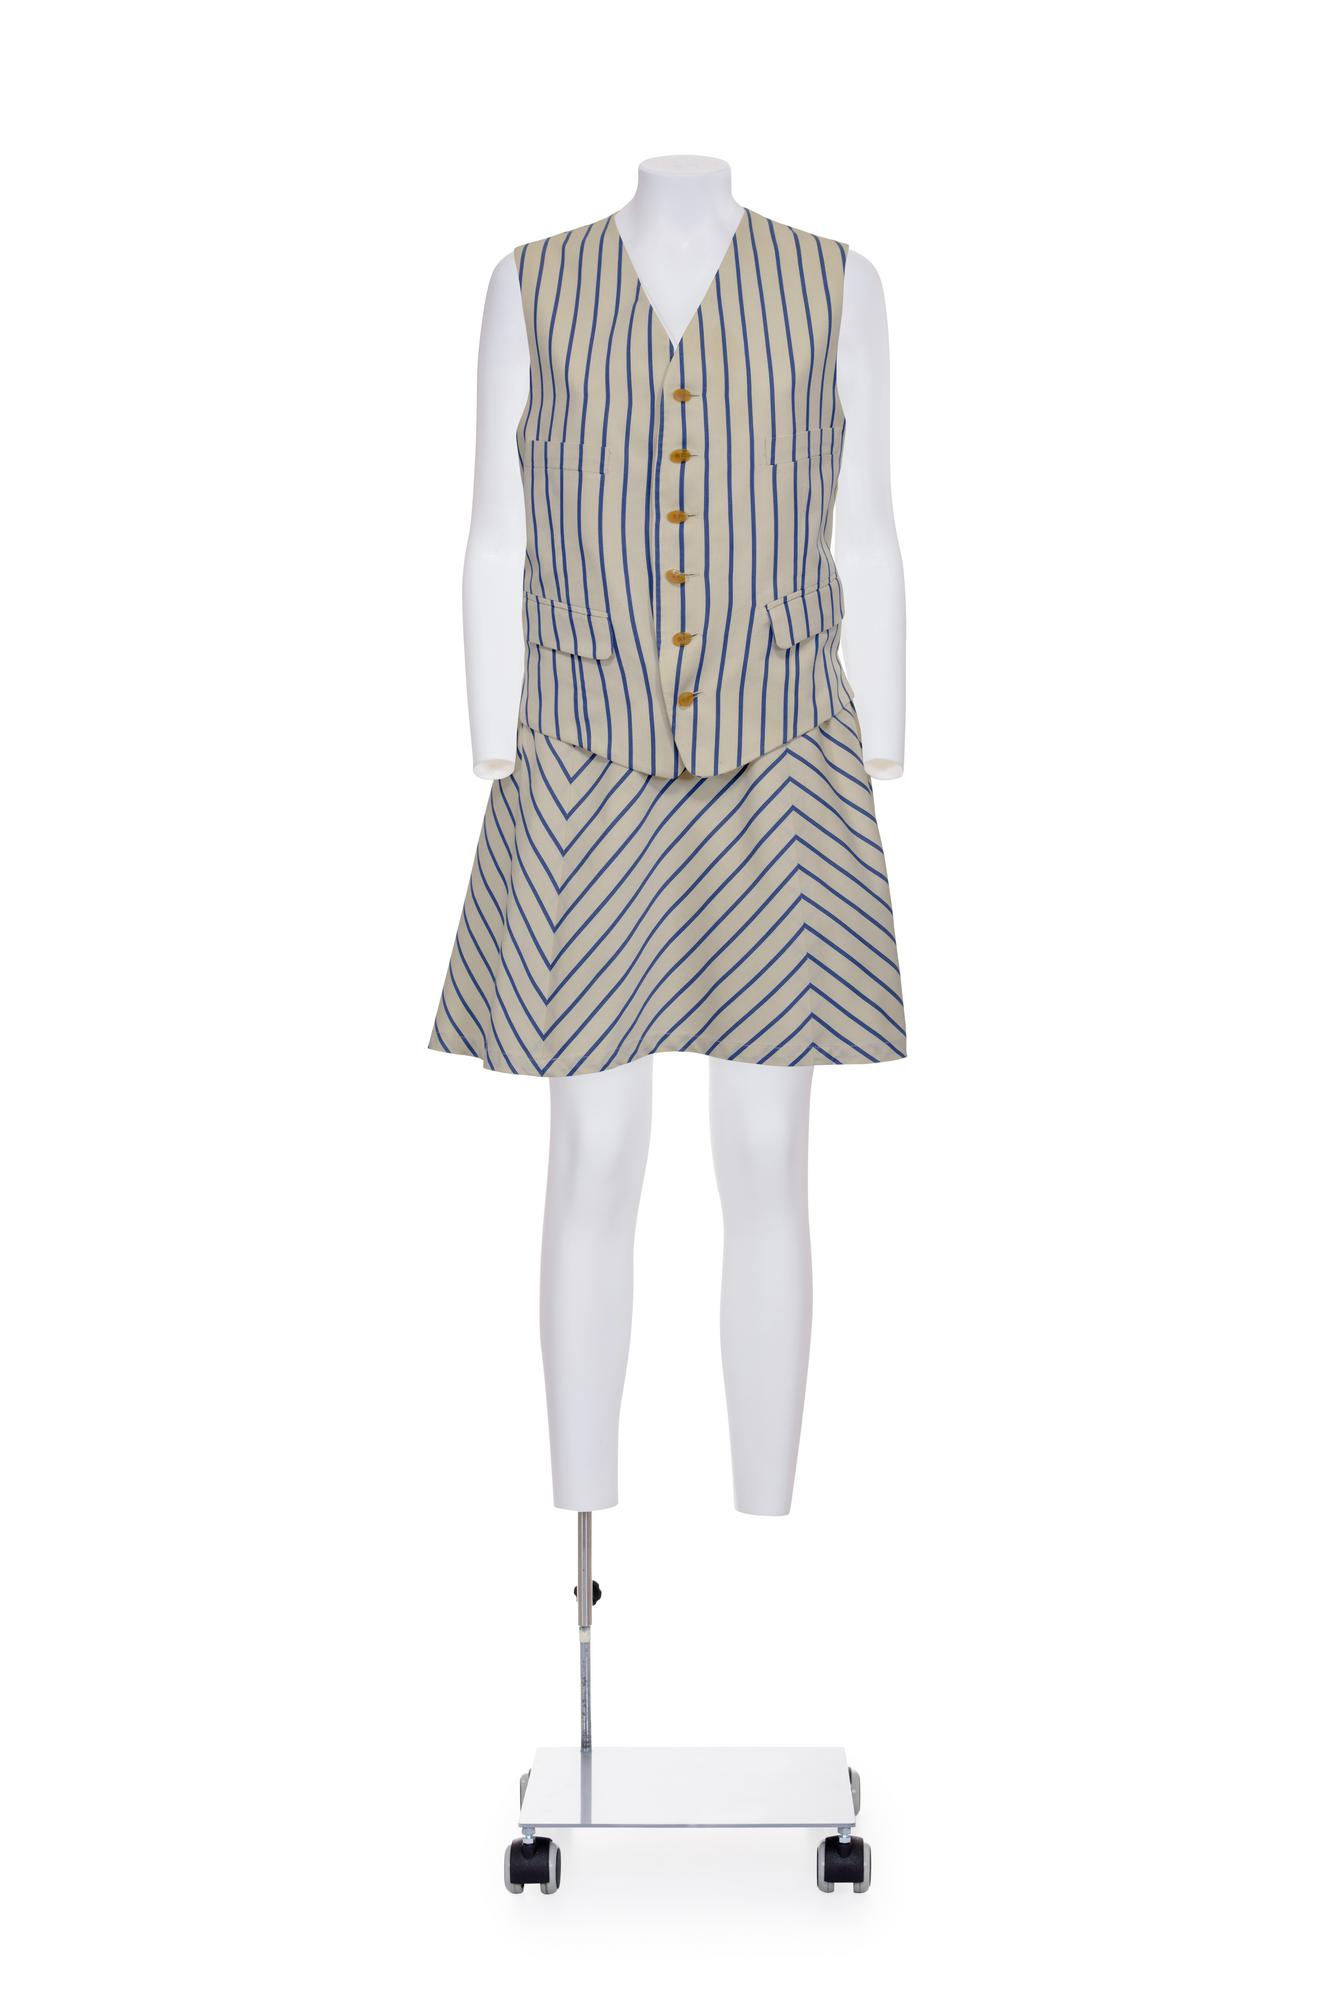 VIVIENNE WESTWOOD Pinstripe two pieces suit with draped skirt DESCRIPTION:...